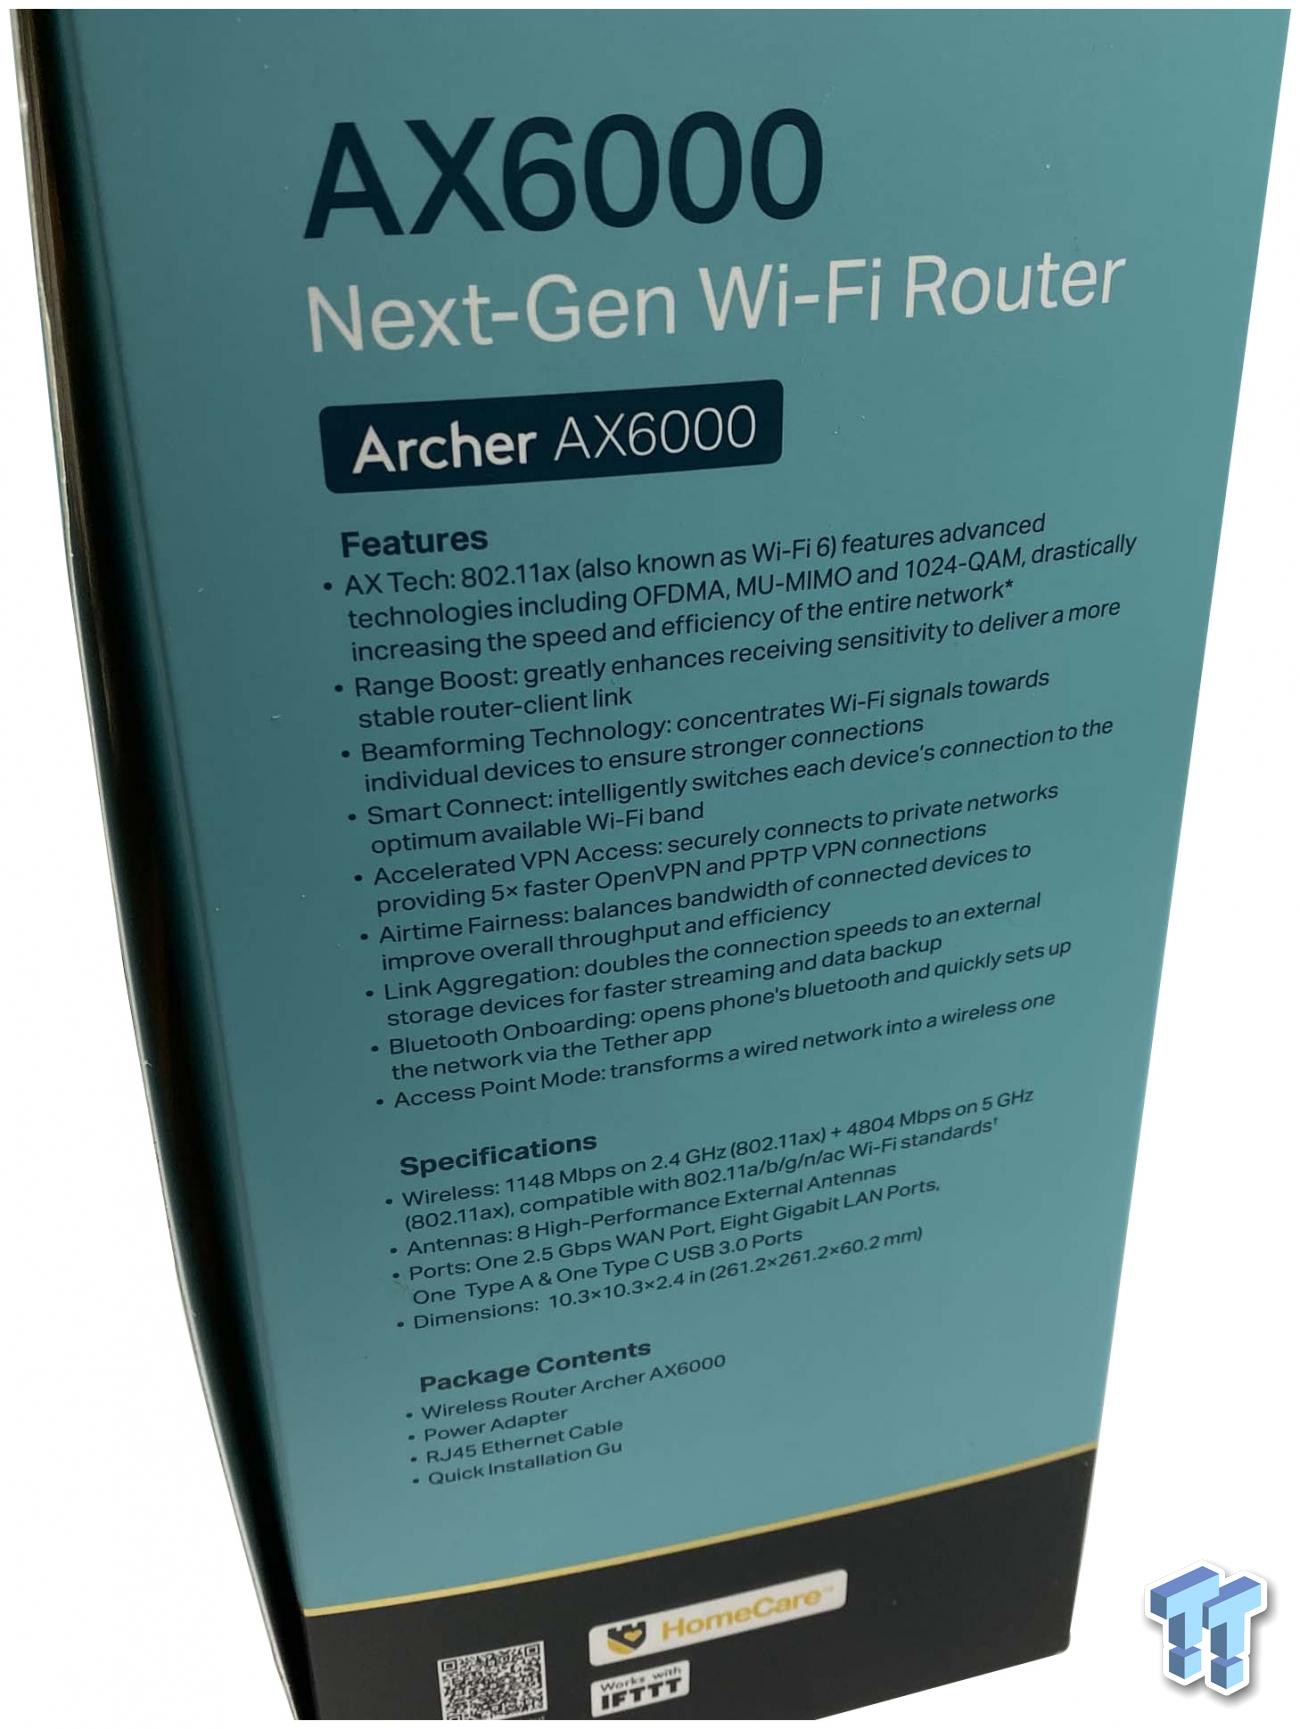 Archer AX6000, AX6000 Next-Gen Wi-Fi Router